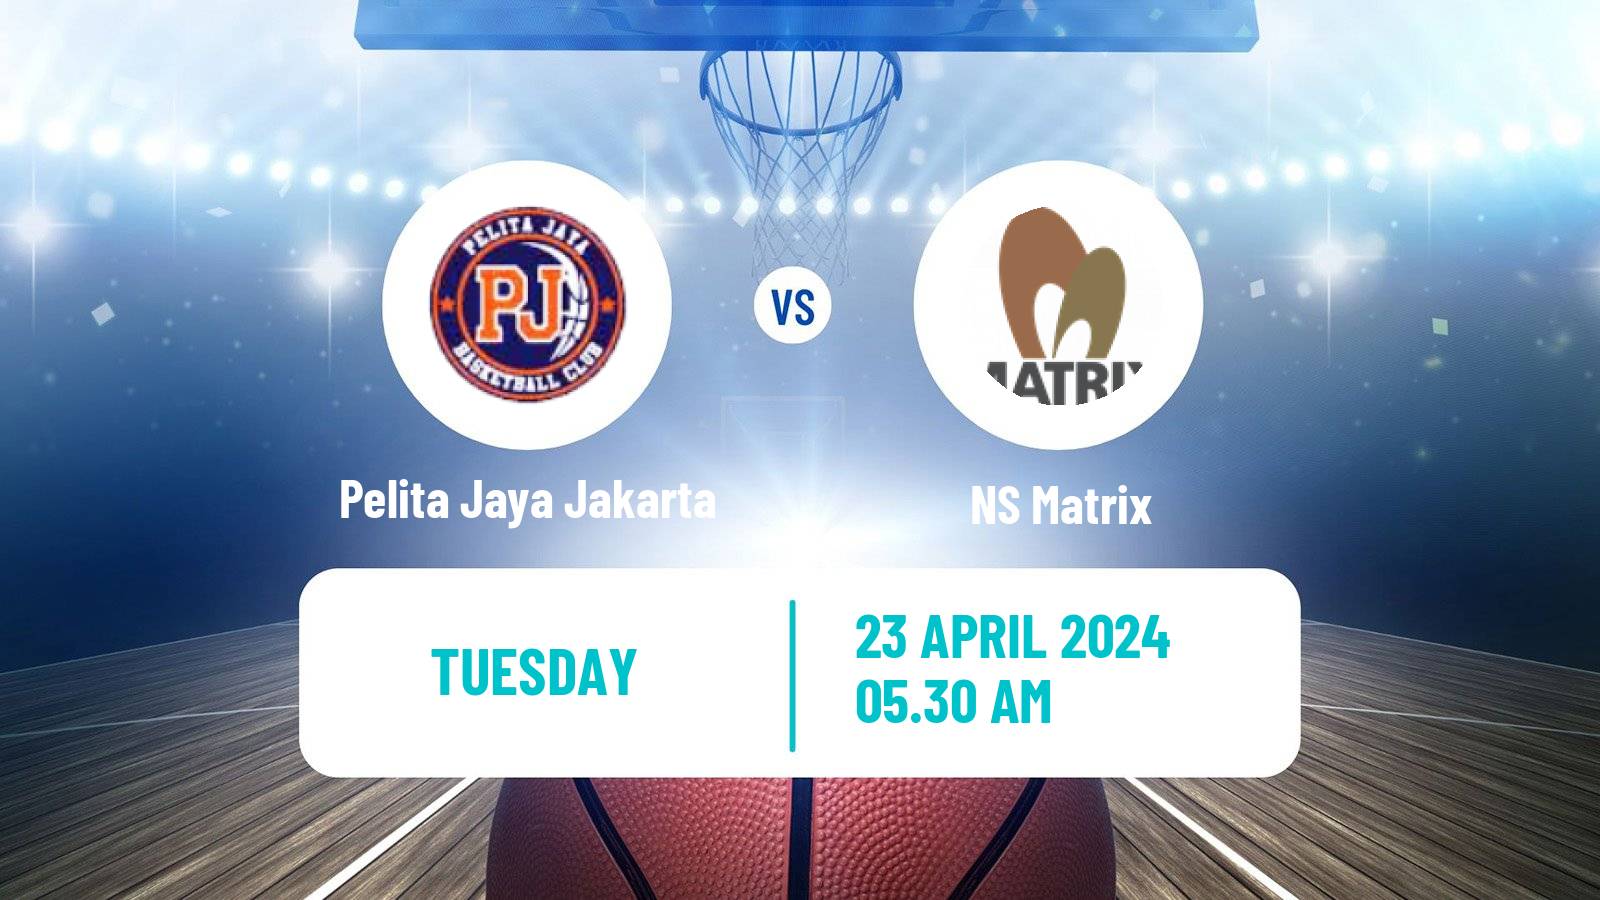 Basketball Asia Champions League Basketball Pelita Jaya Jakarta - NS Matrix